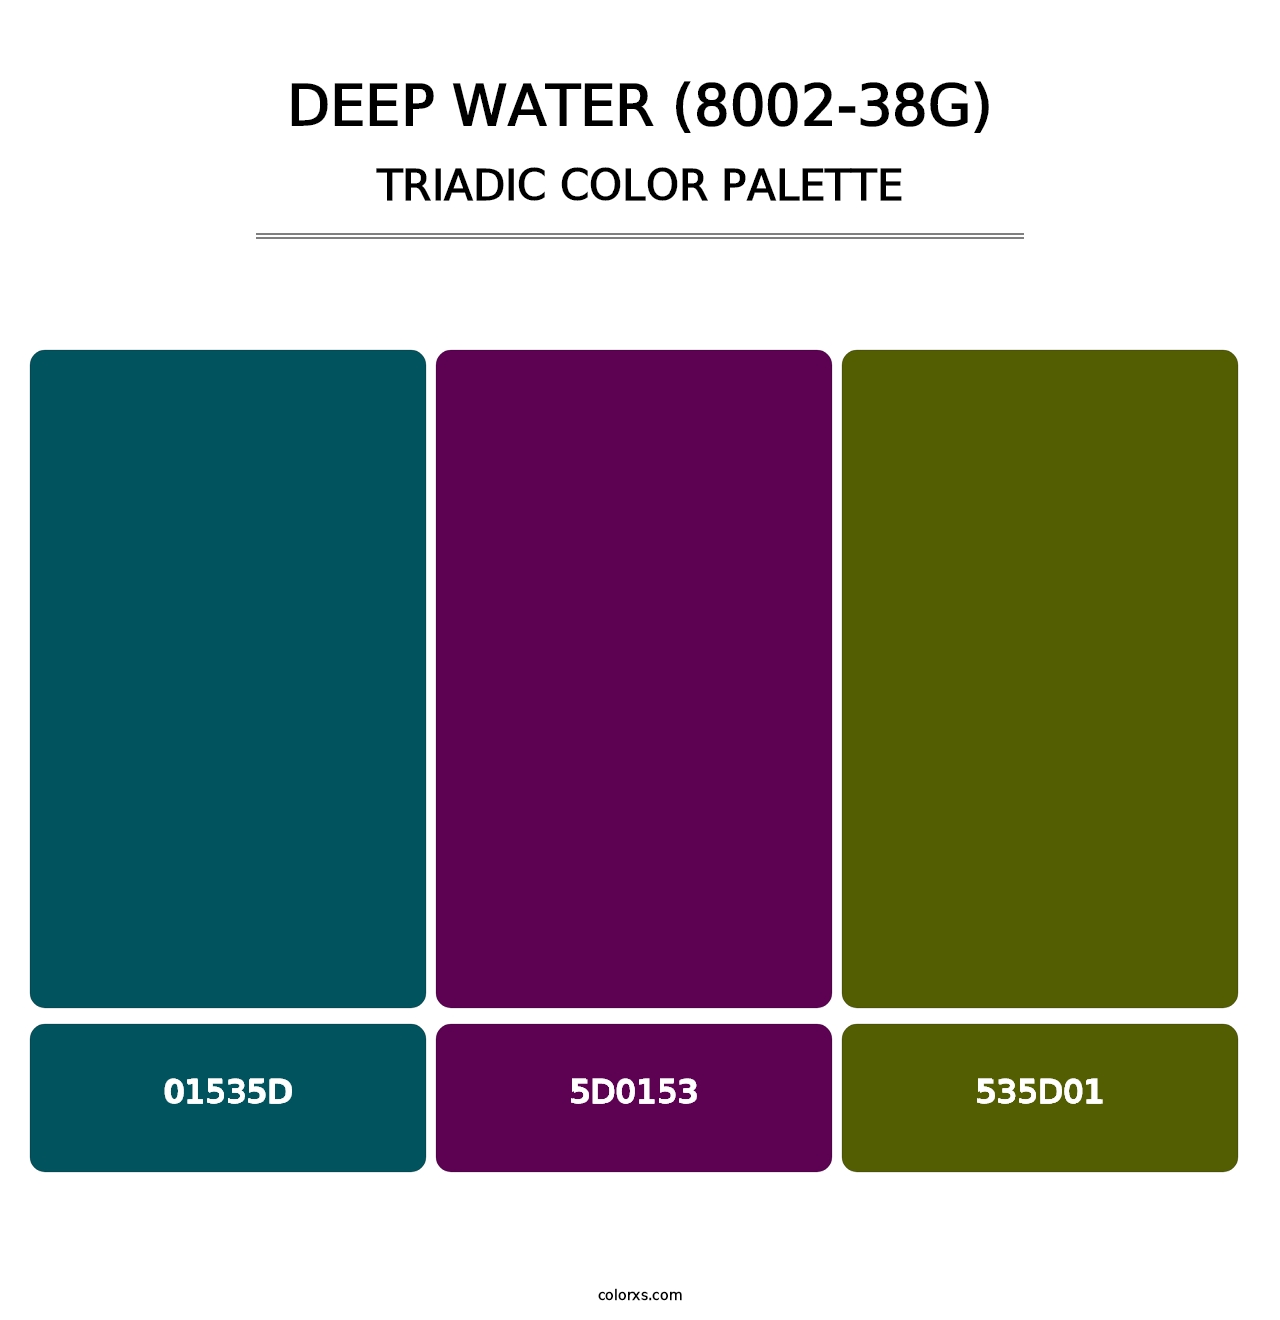 Deep Water (8002-38G) - Triadic Color Palette